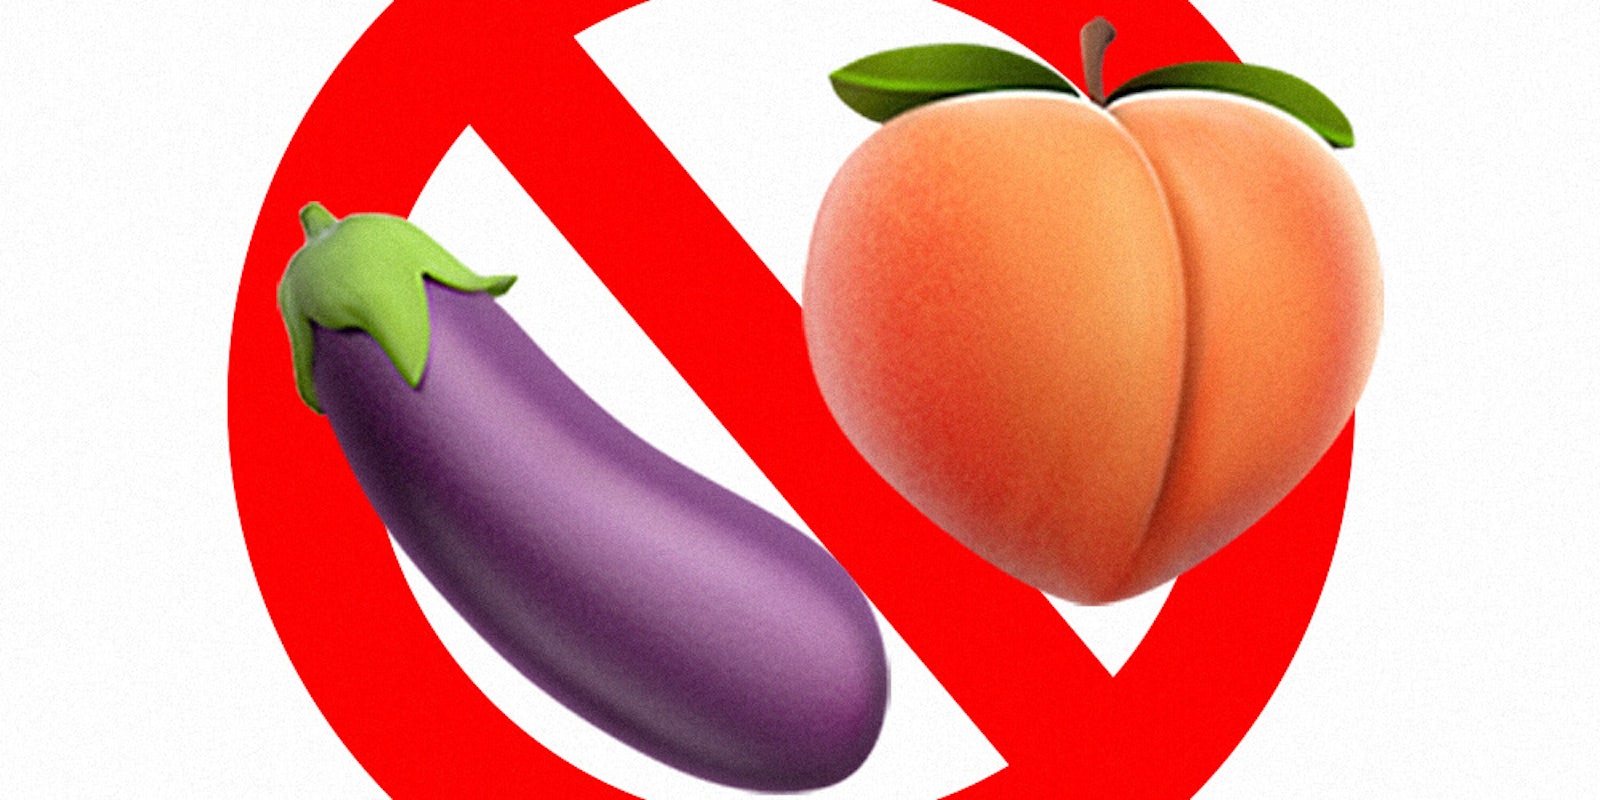 peach and eggplant emoji ban